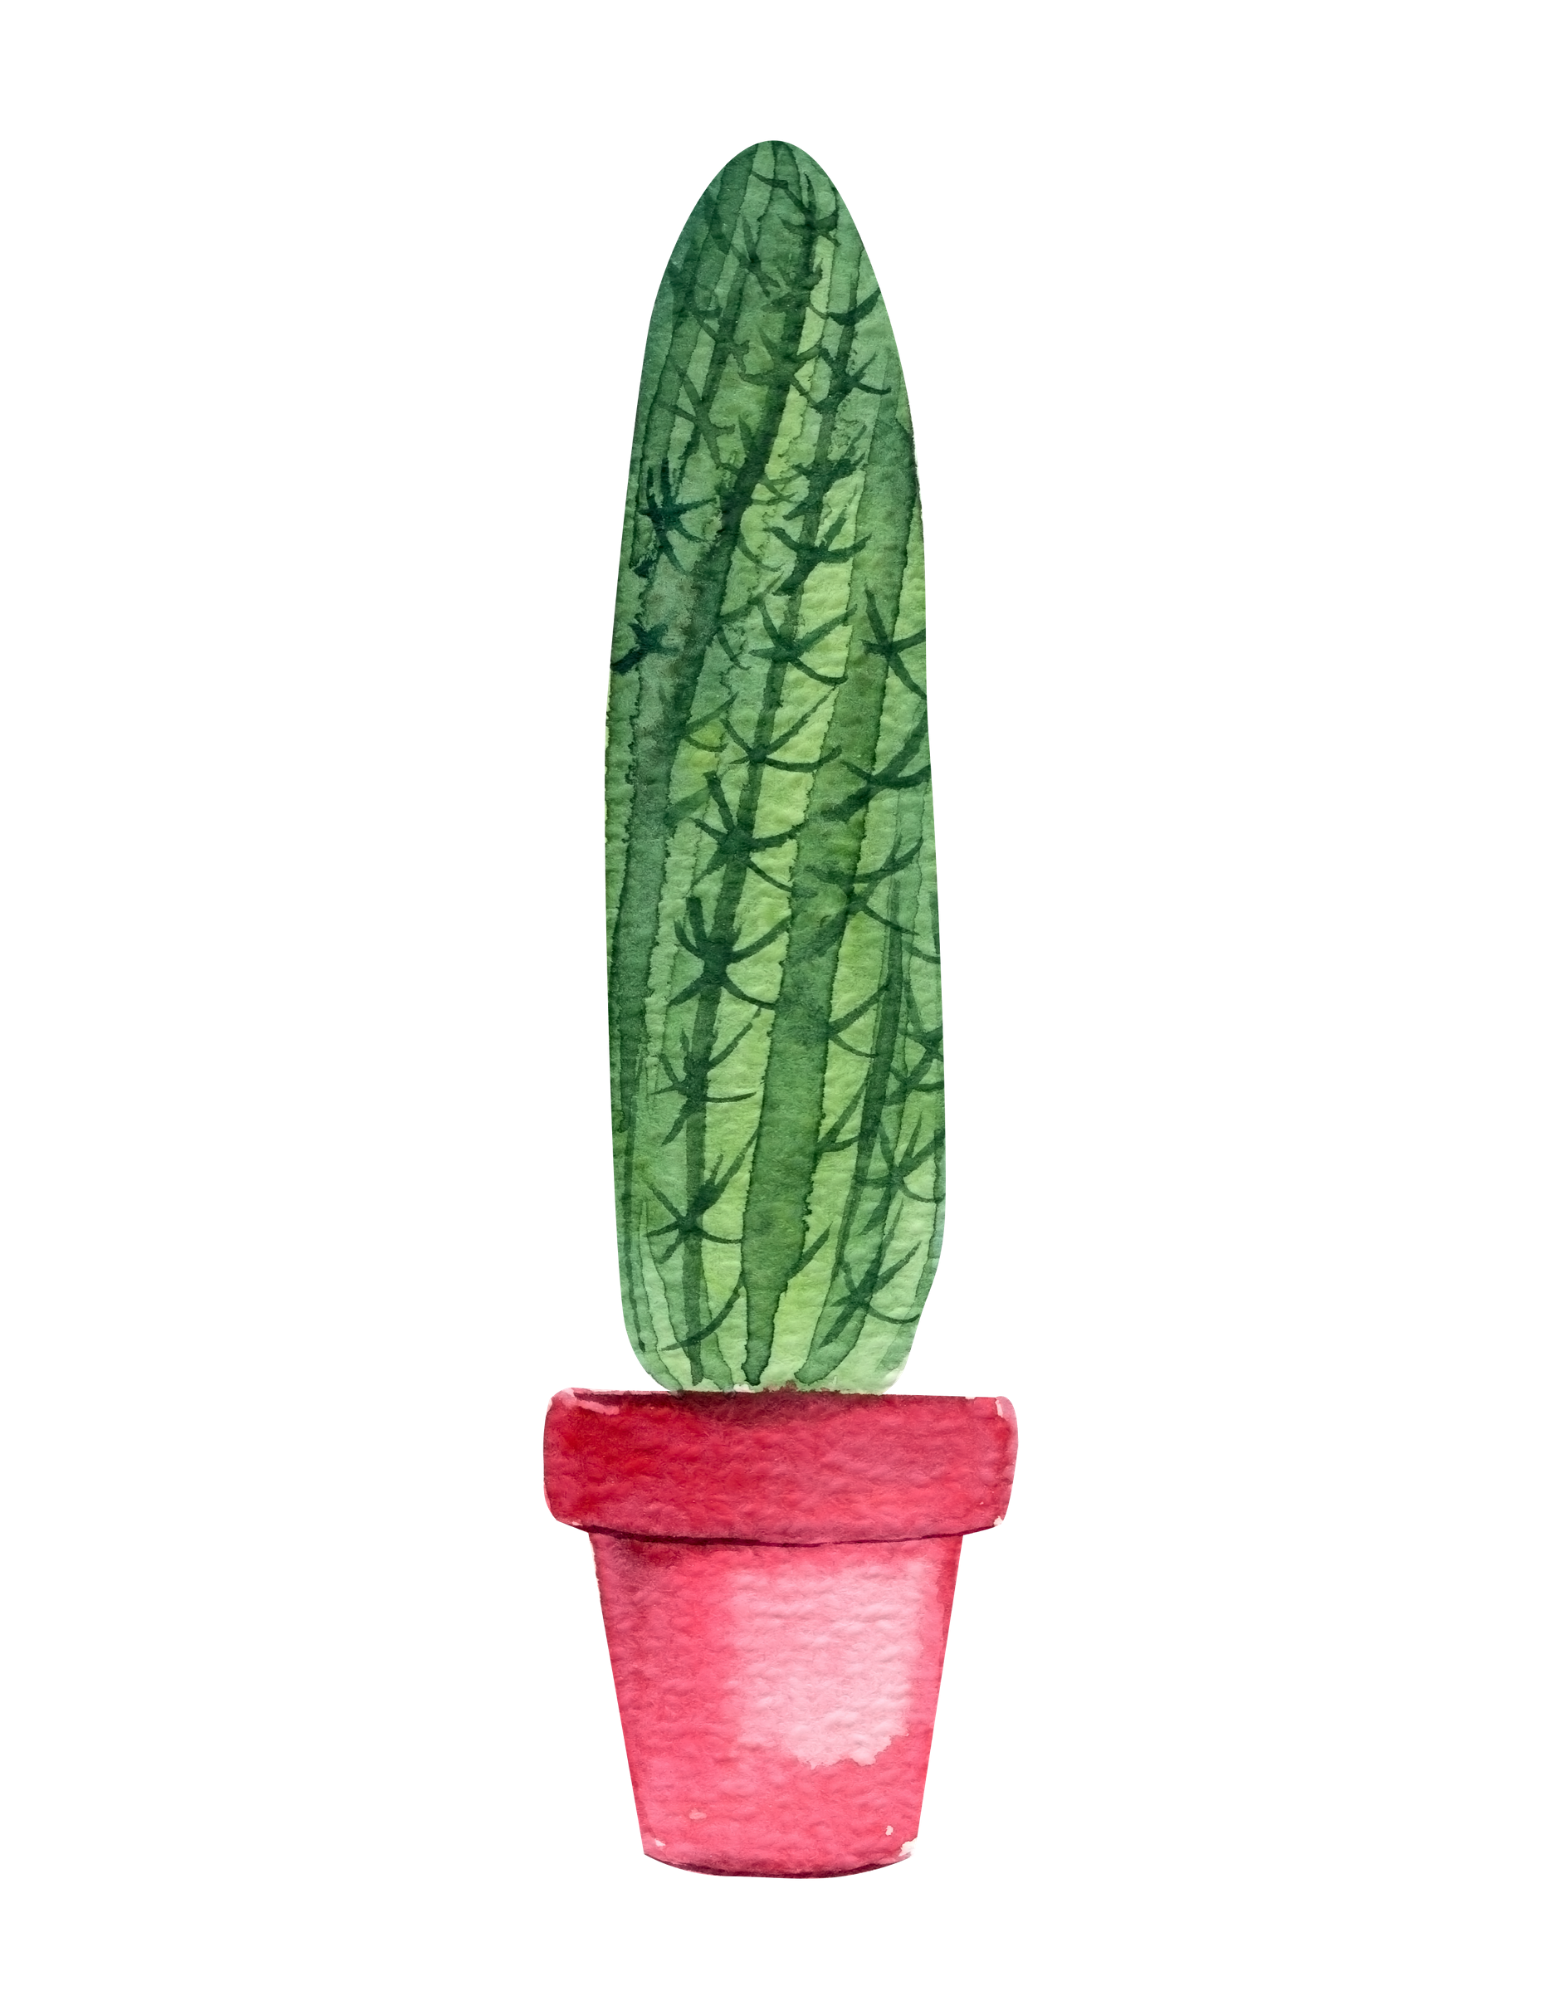 Cacti Watercolor Wall Art- Set of 4, Printable Digital Download, No Shipping